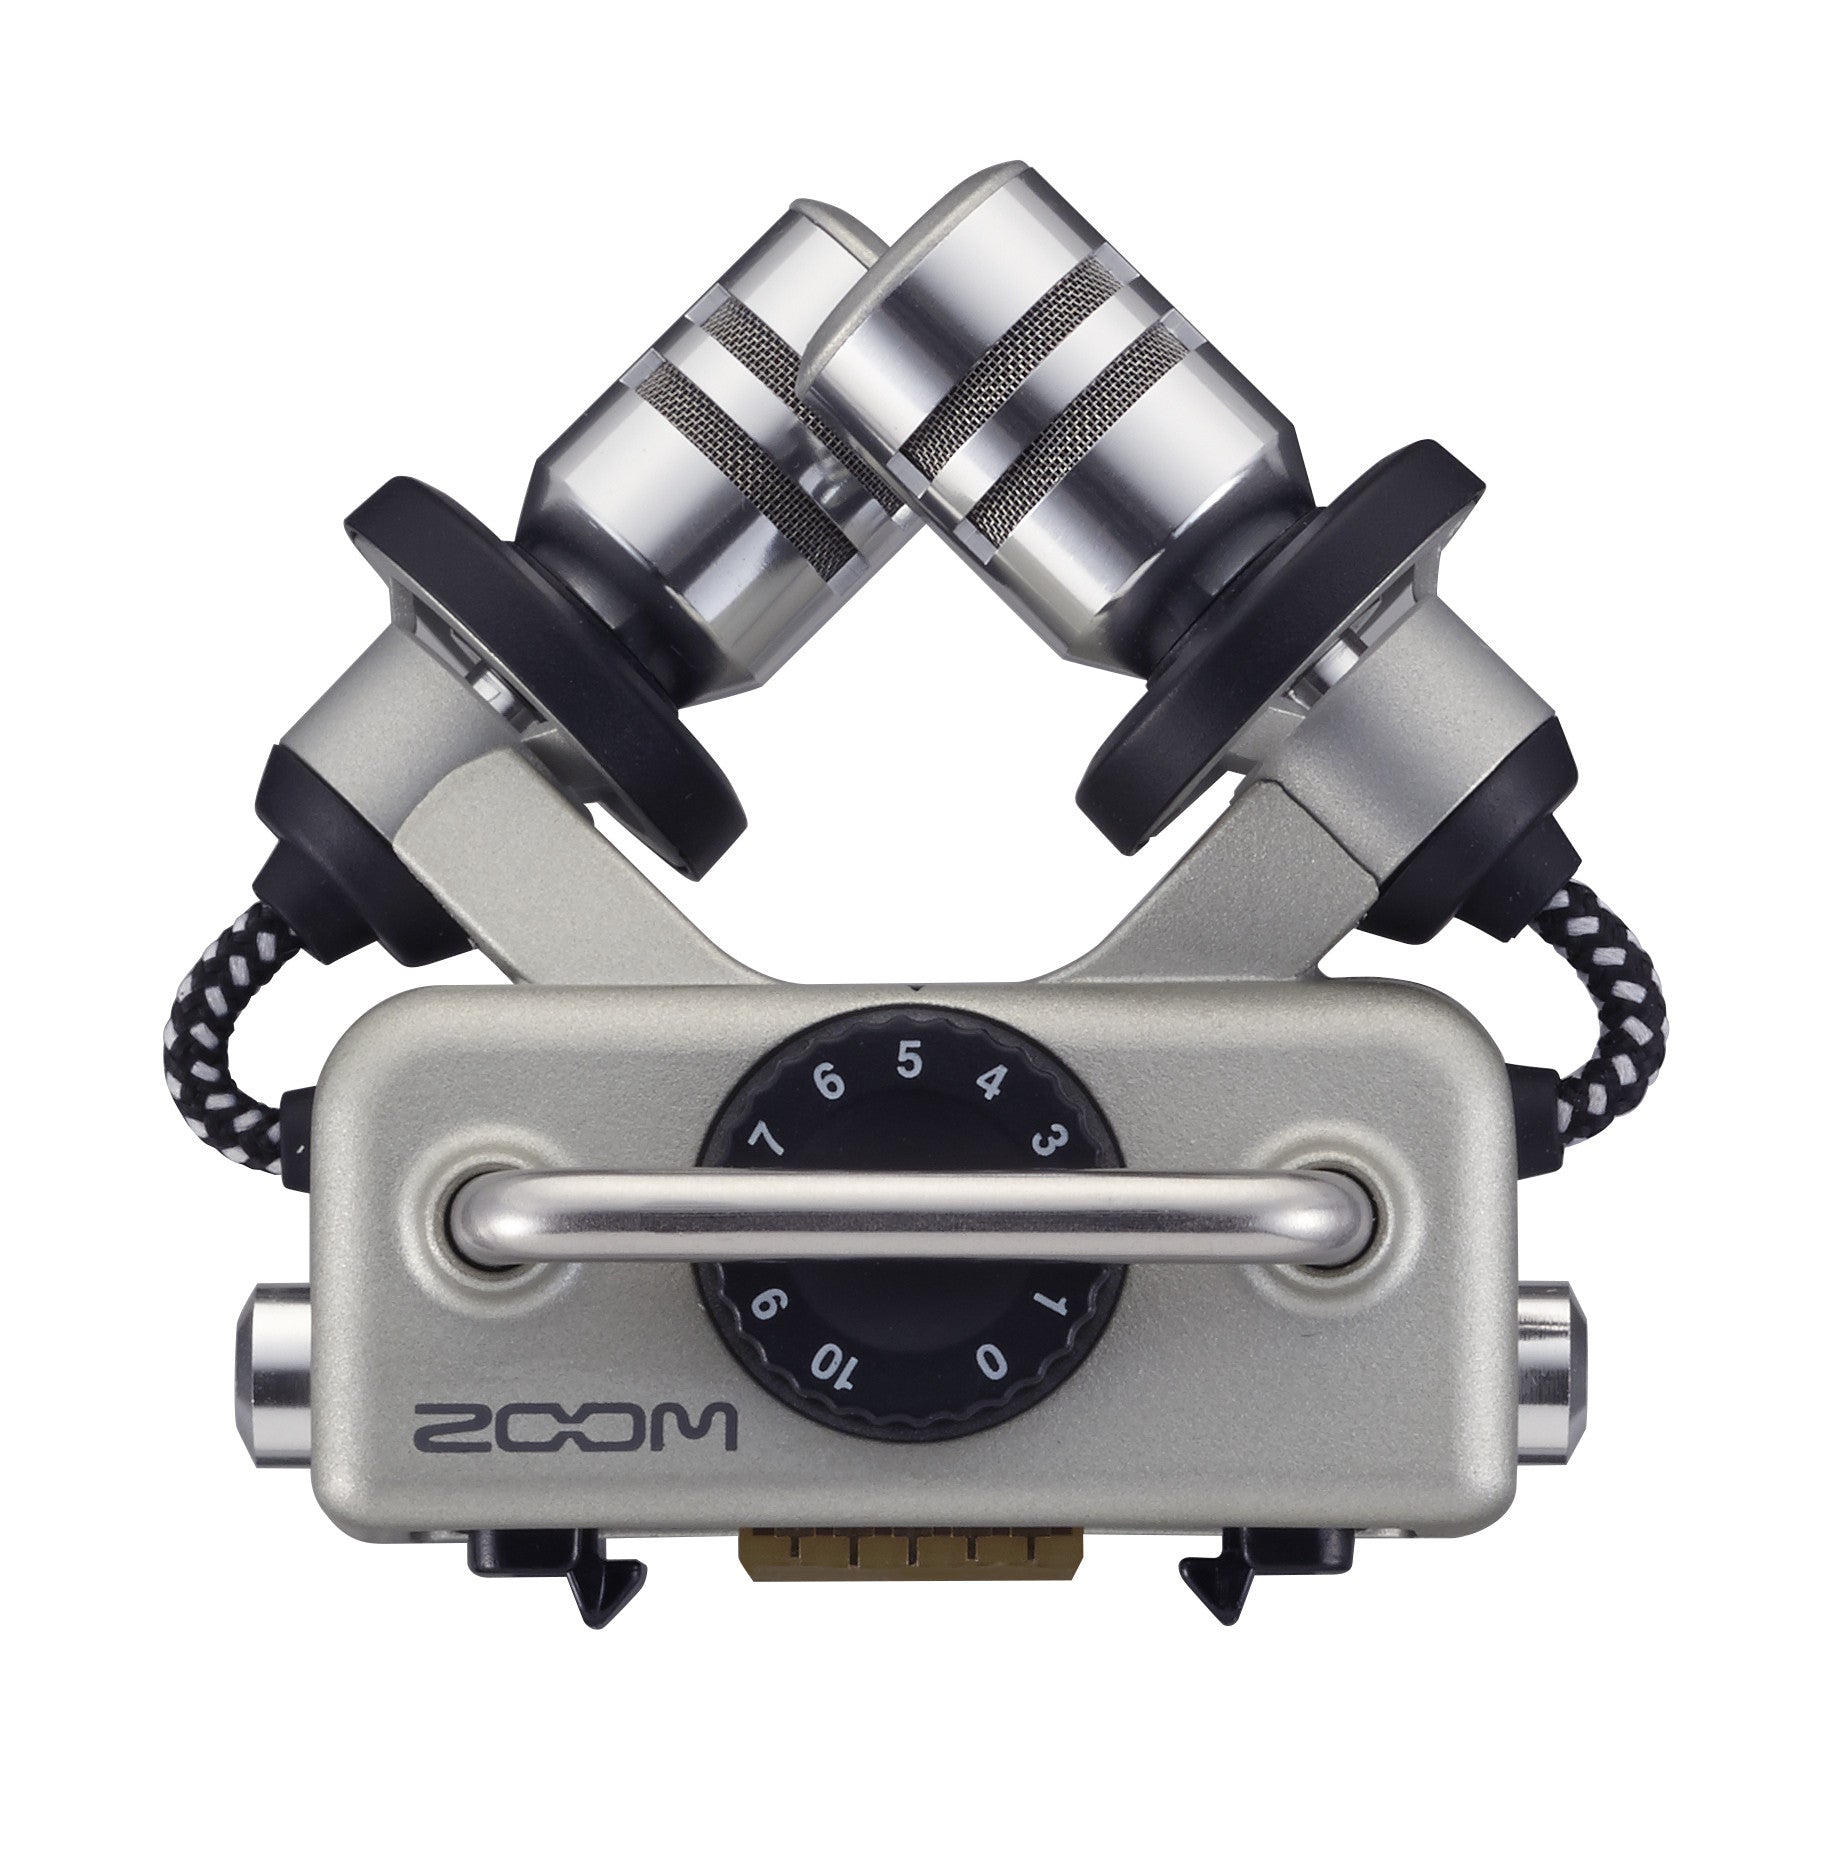 Zoom H5 Handy Recorder, video audio microphones & recorders, Zoom - Pictureline  - 8